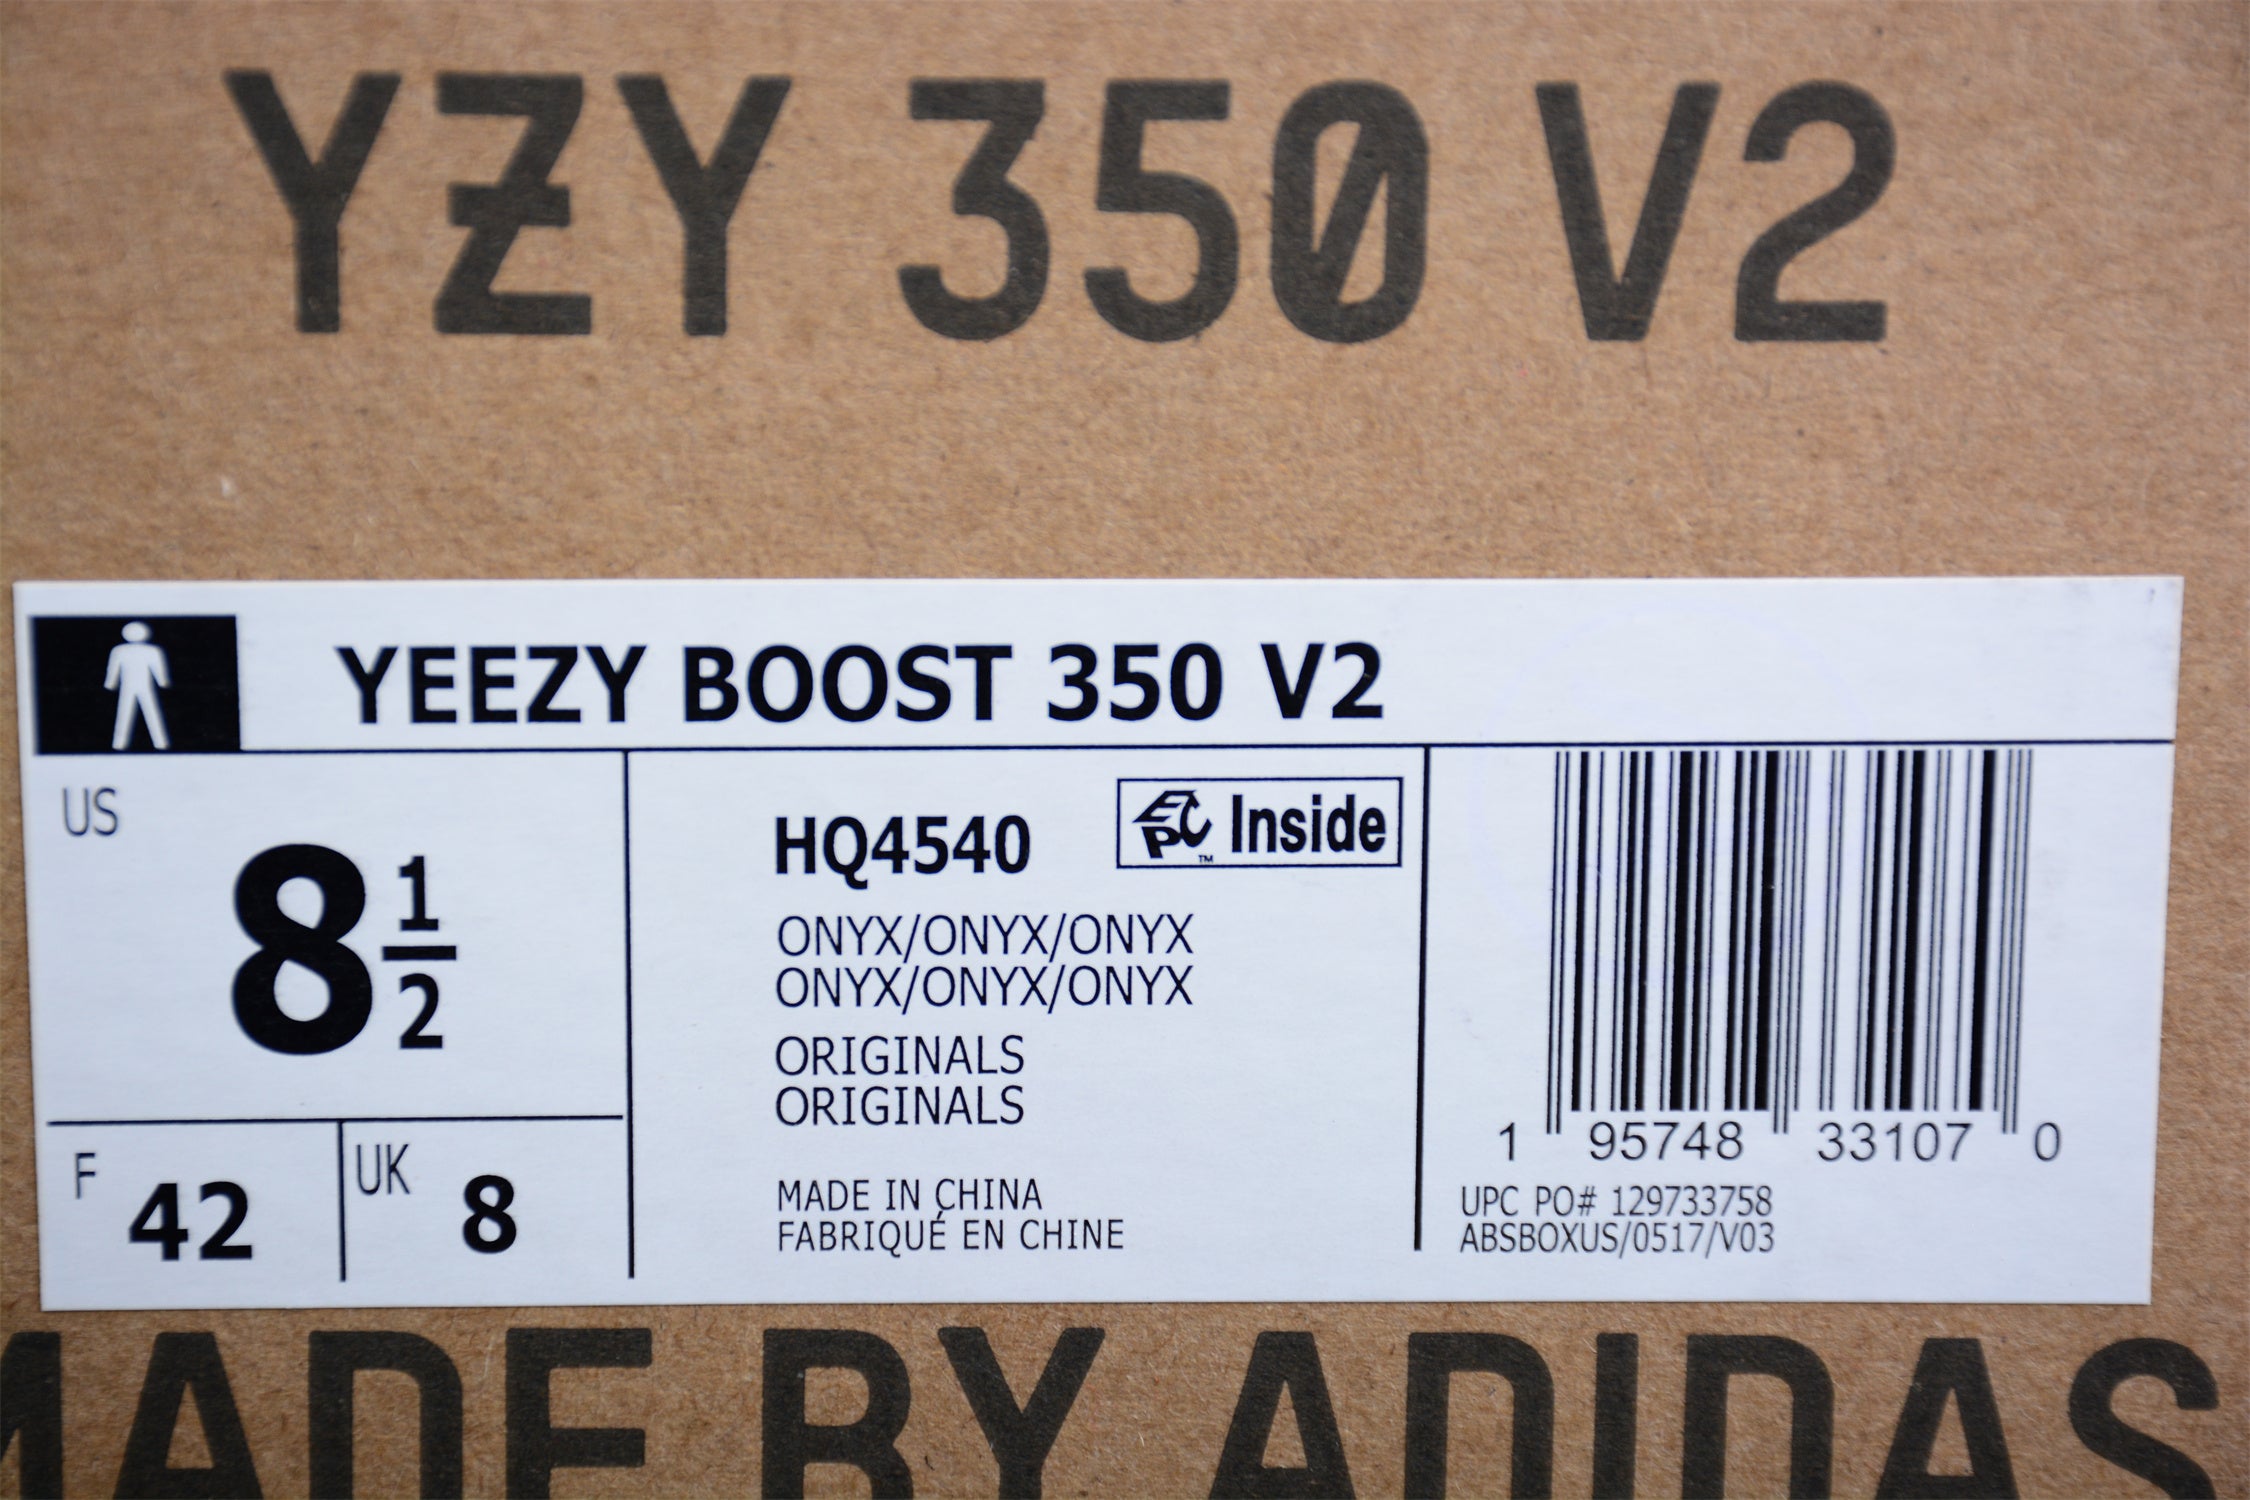 adidasMens Yeezy Boost 350 - Onyx